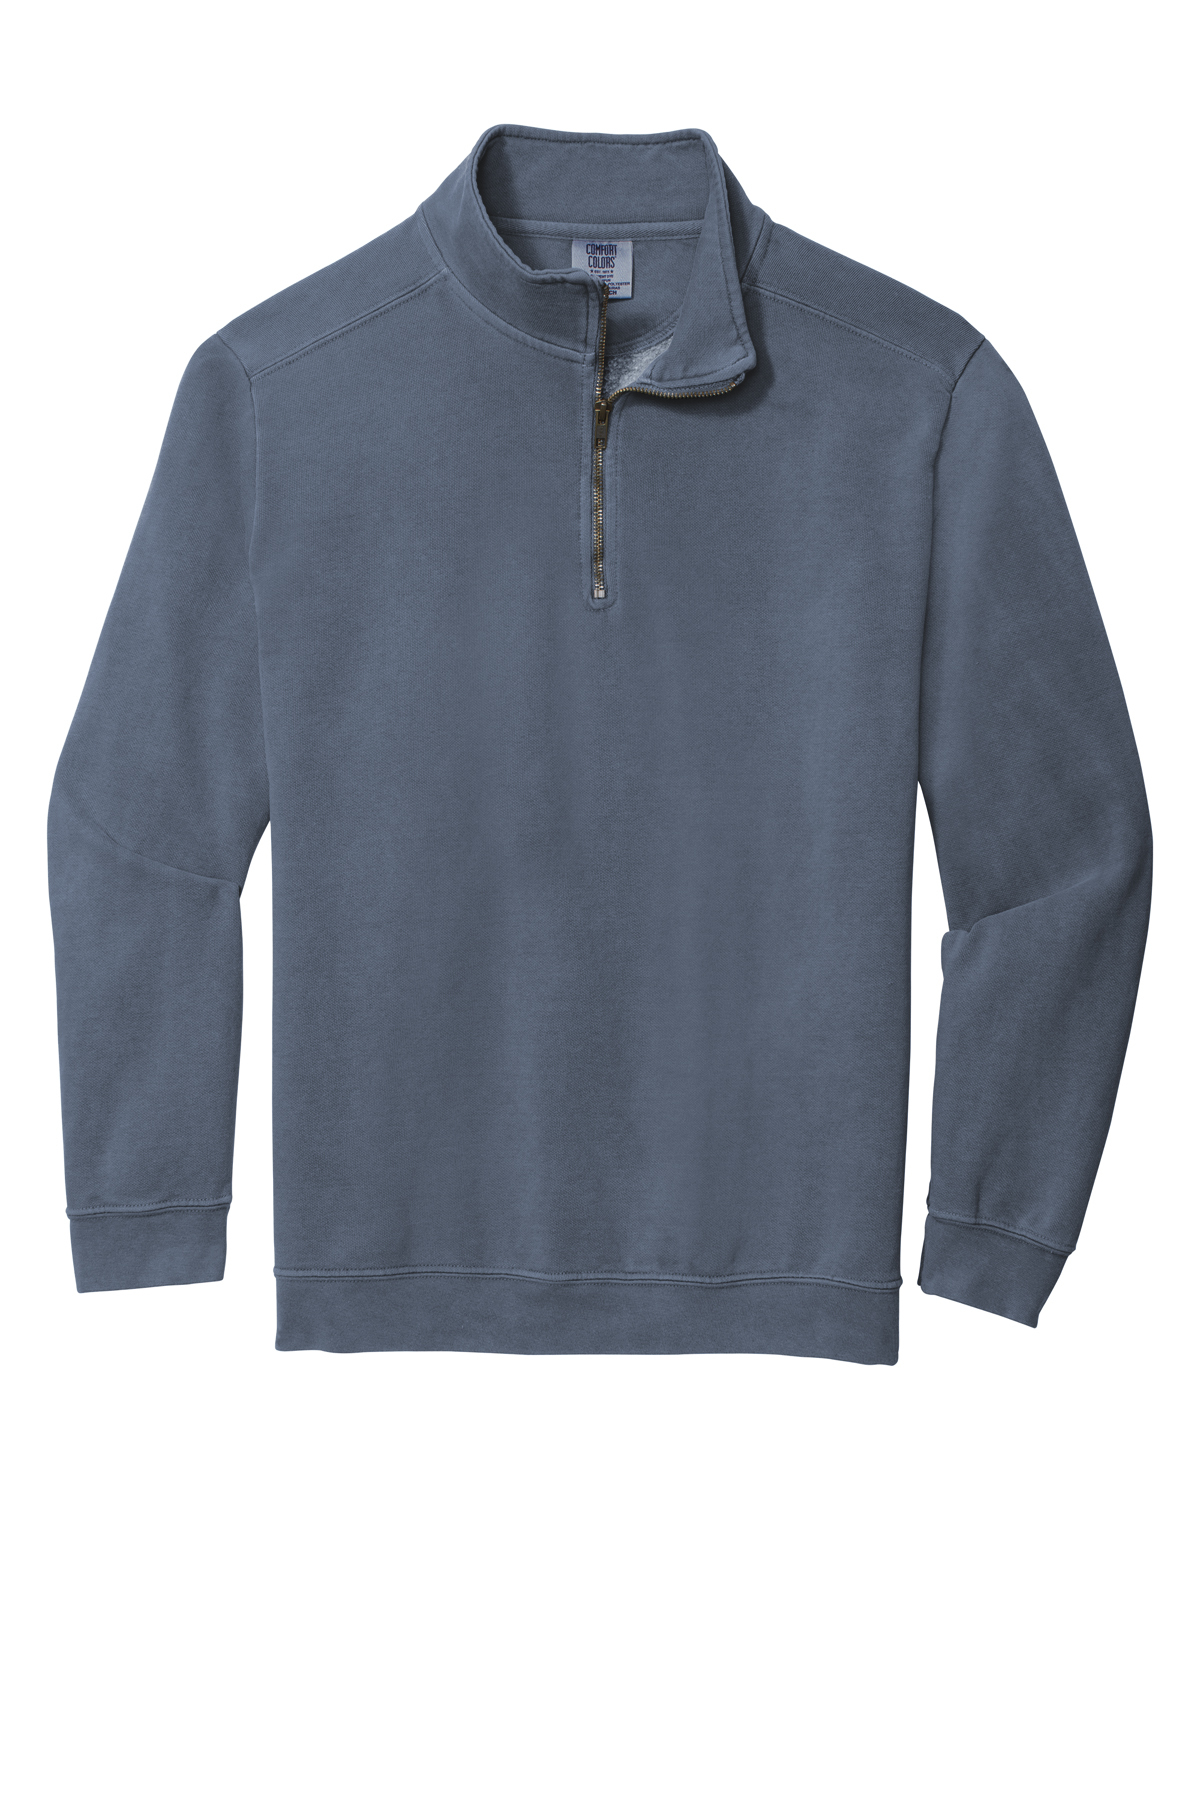 Comfort Colors Ring Spun 1/4-Zip Sweatshirt | Product | Online Apparel ...